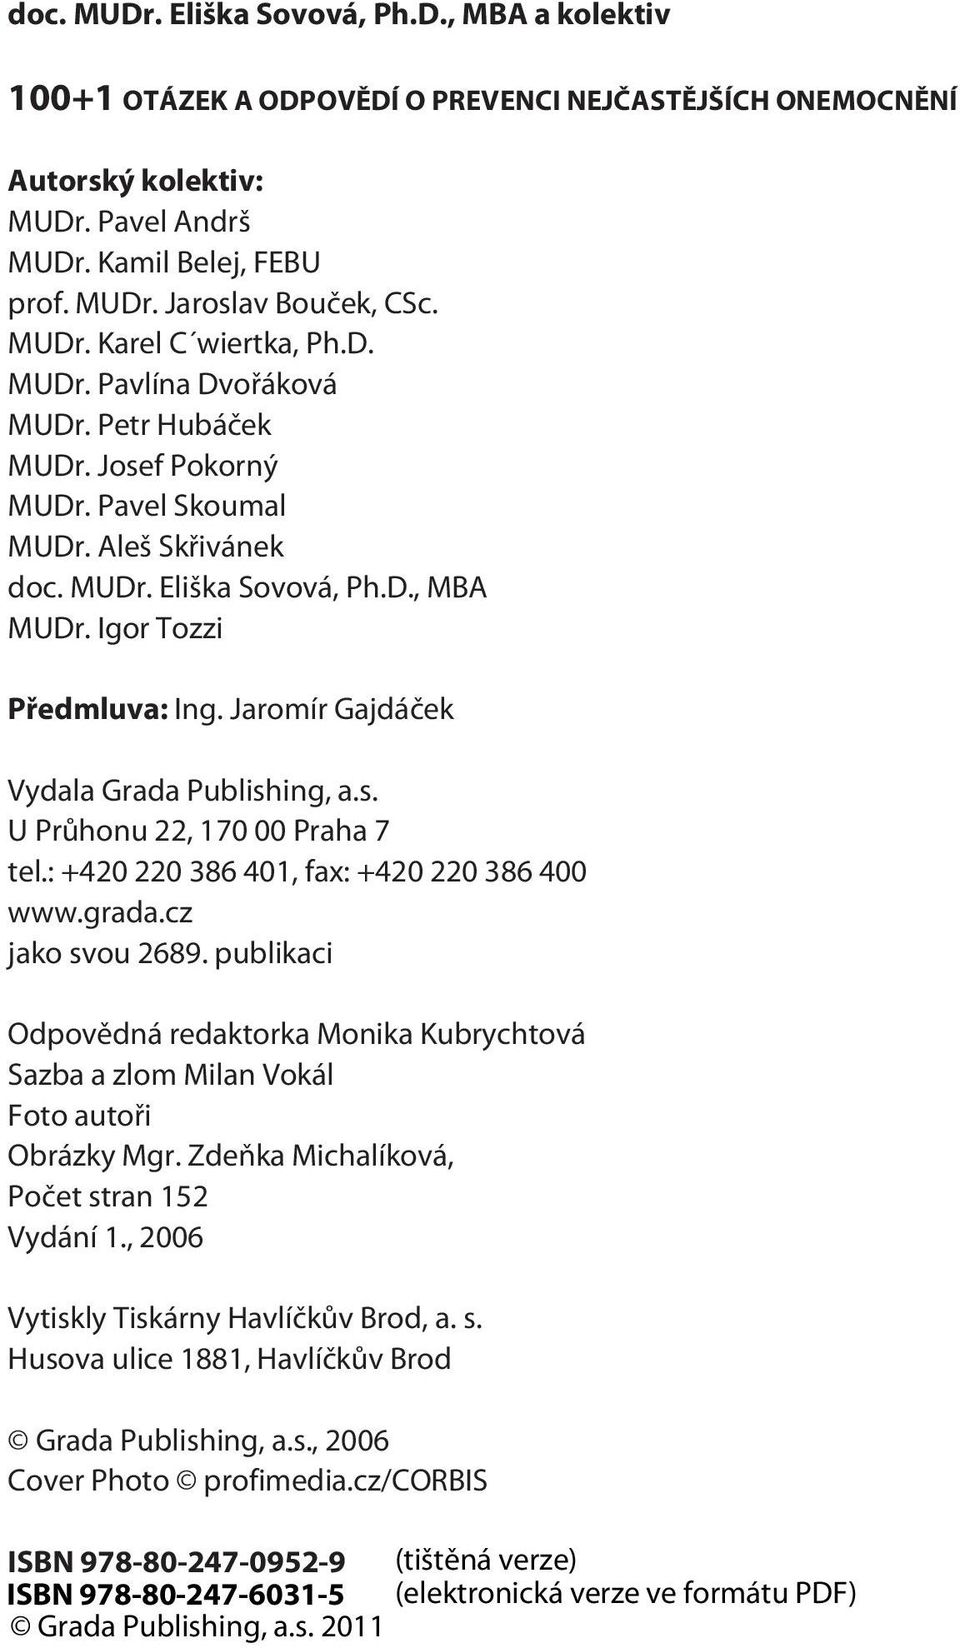 Igor Tozzi Pøedmluva: Ing. Jaromír Gajdáèek Vydala Grada Publishing, a.s. U Prùhonu 22, 170 00 Praha 7 tel.: +420 220 386 401, fax: +420 220 386 400 www.grada.cz jako svou 2689.